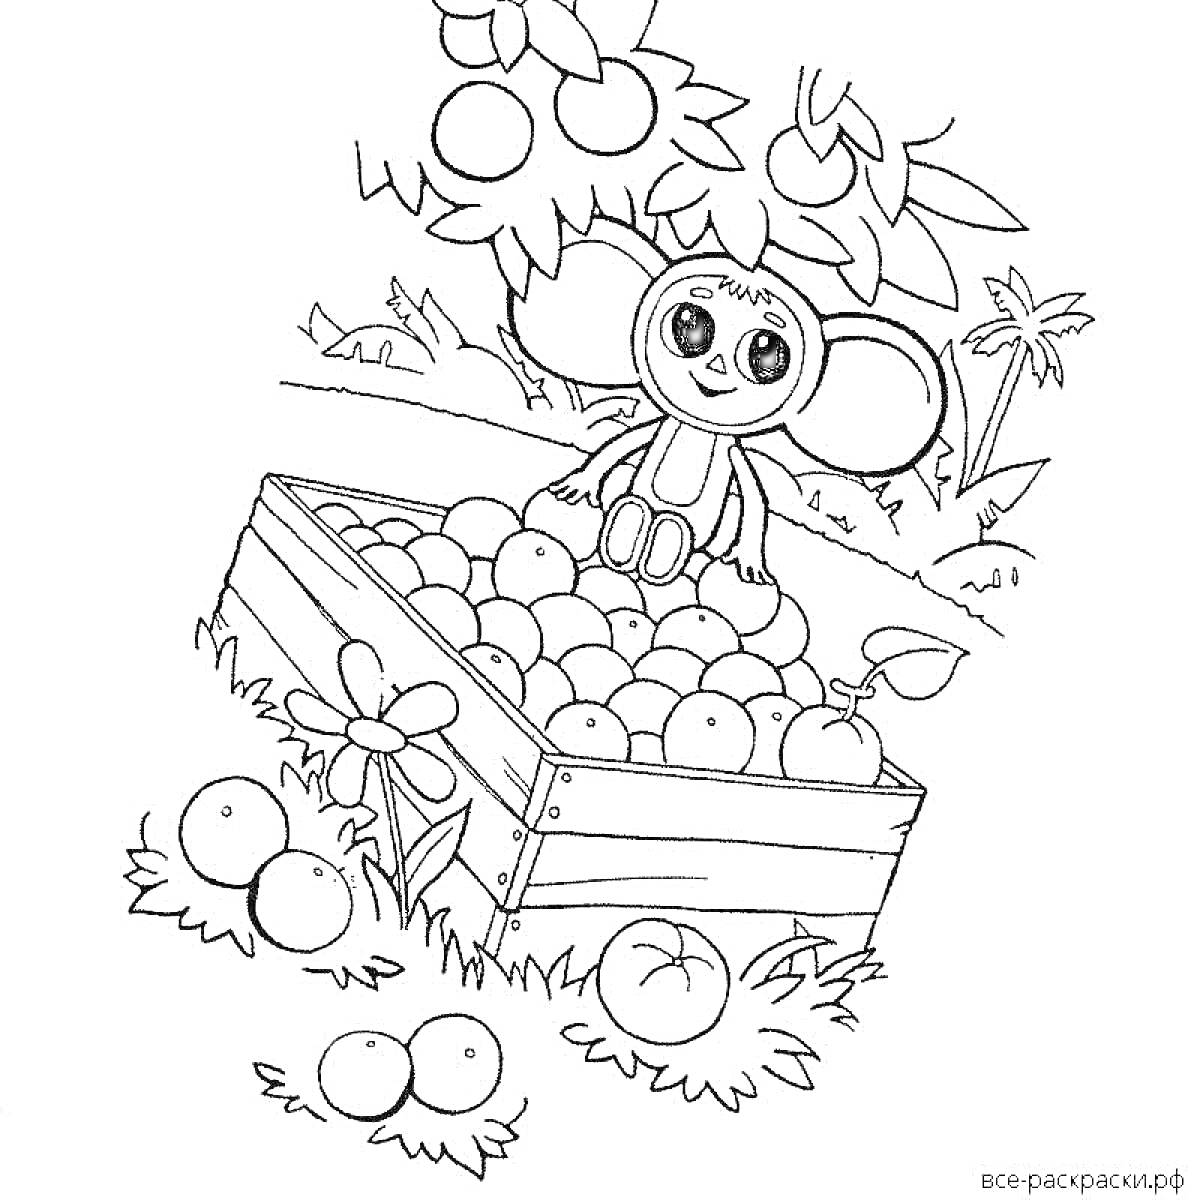 Раскраска Чебурашка сидит на ящике с апельсинами под деревом